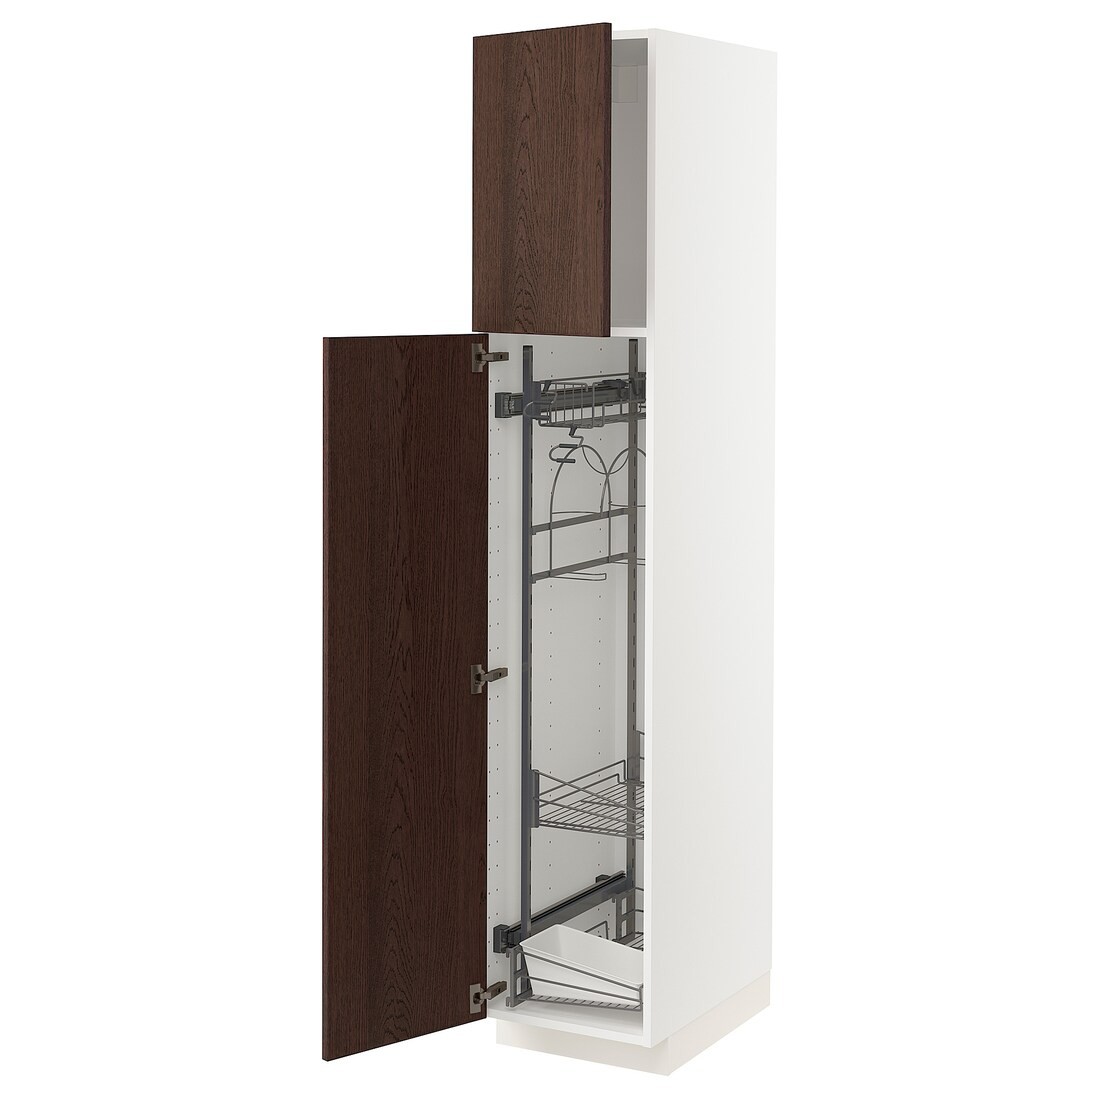 METOD МЕТОД Высокий шкаф с отделением для аксессуаров для уборки, белый / Sinarp коричневый, 40x60x200 см